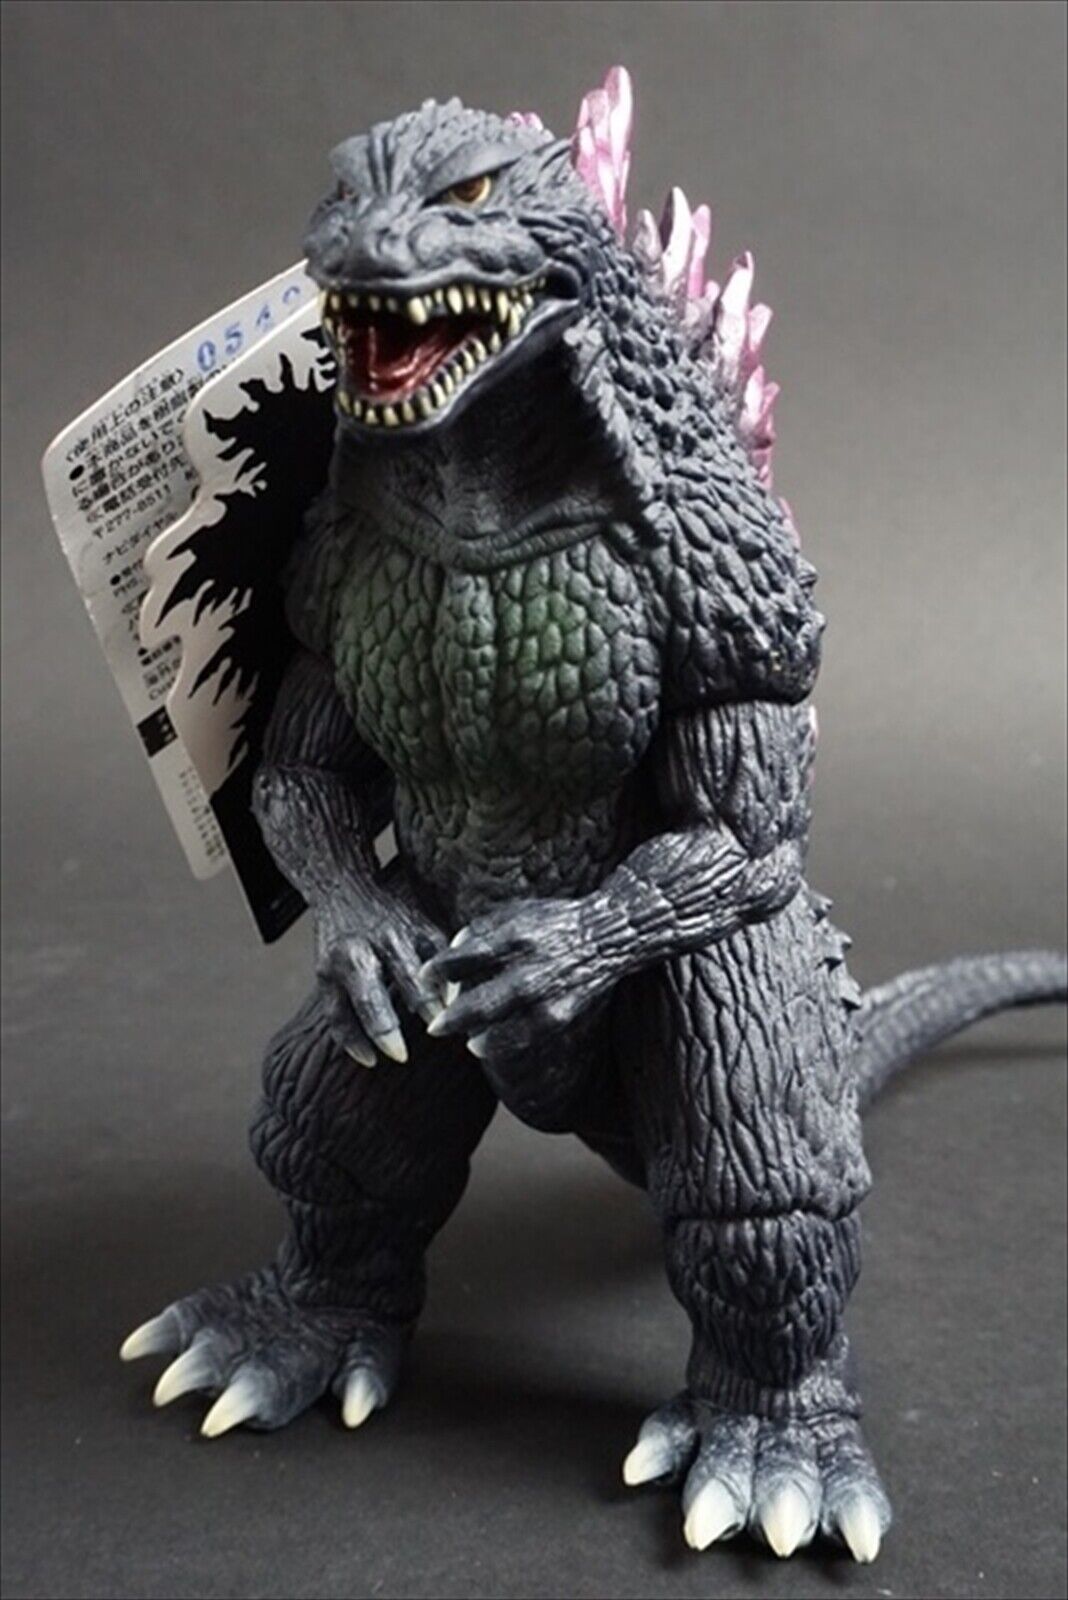 2016 Bandai Millennium Godzilla 11" long Figure from Godzilla 2000 Movie Monster